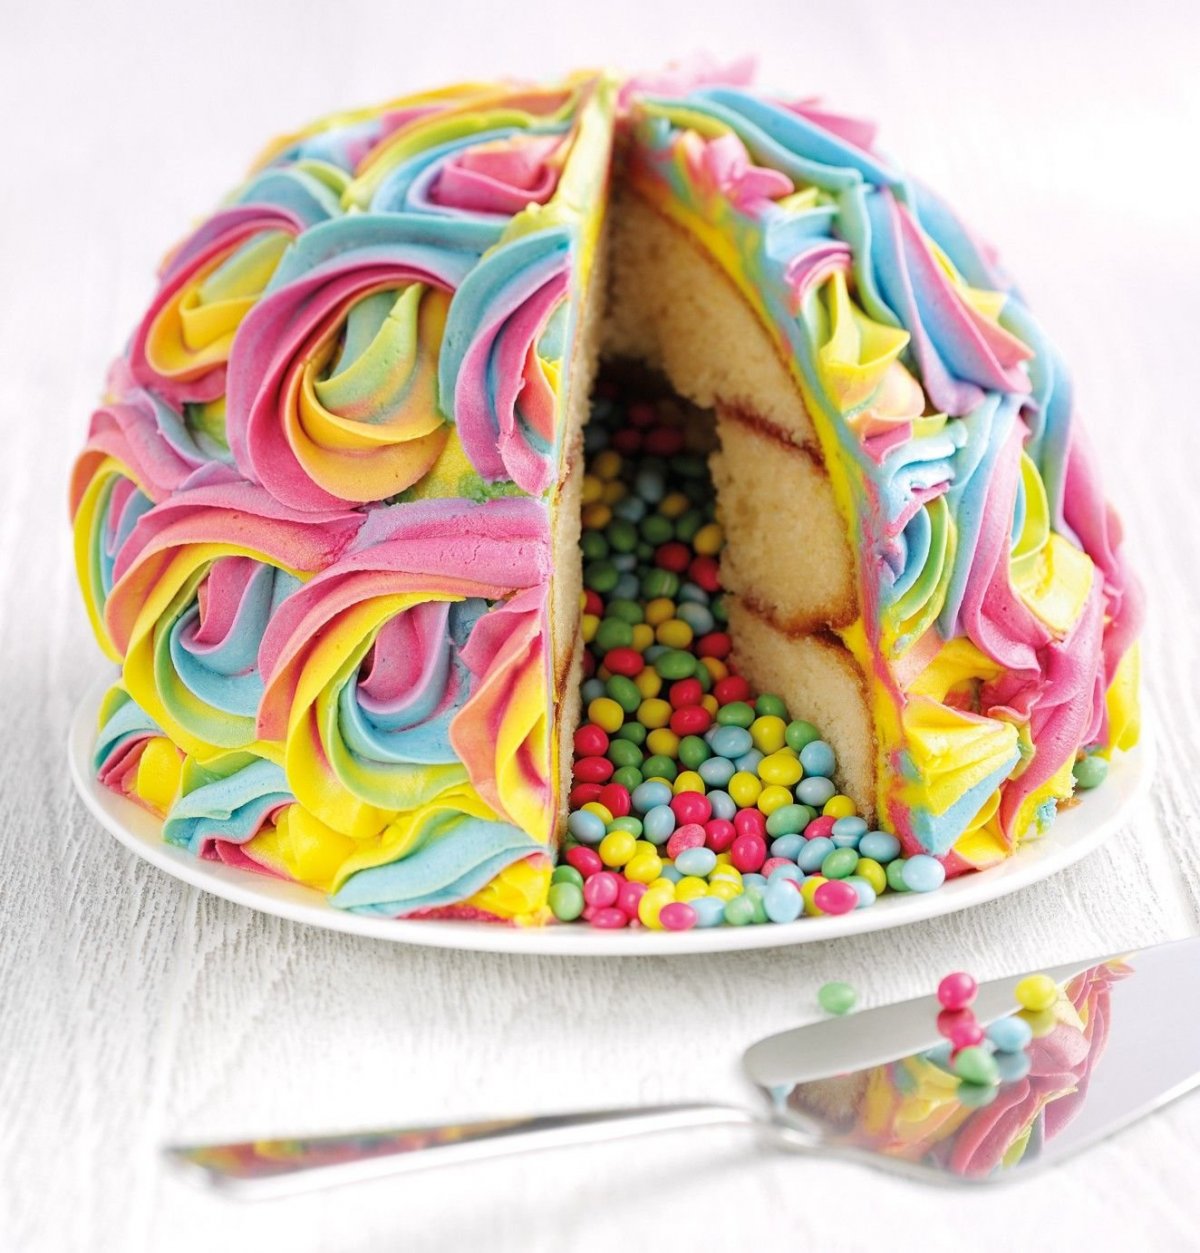 Gorgeous Cakes (30 pics)